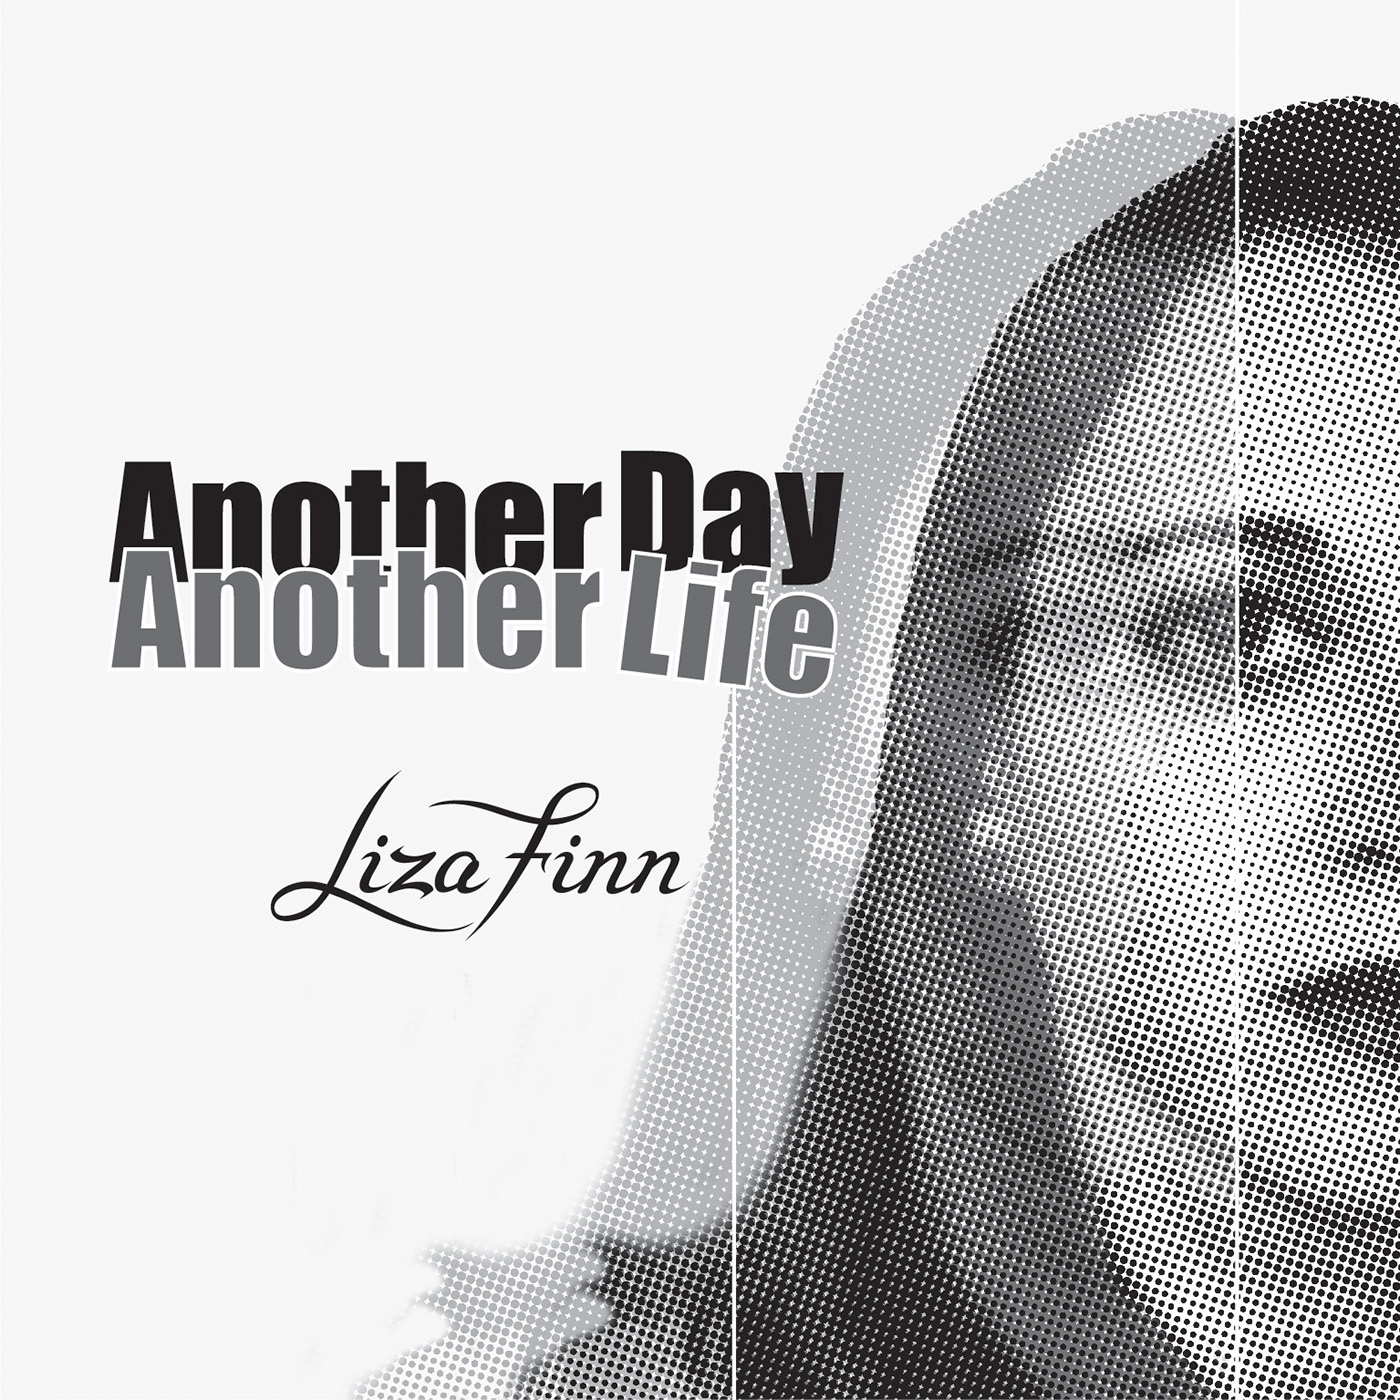 Album cover art for artist Liza Finn